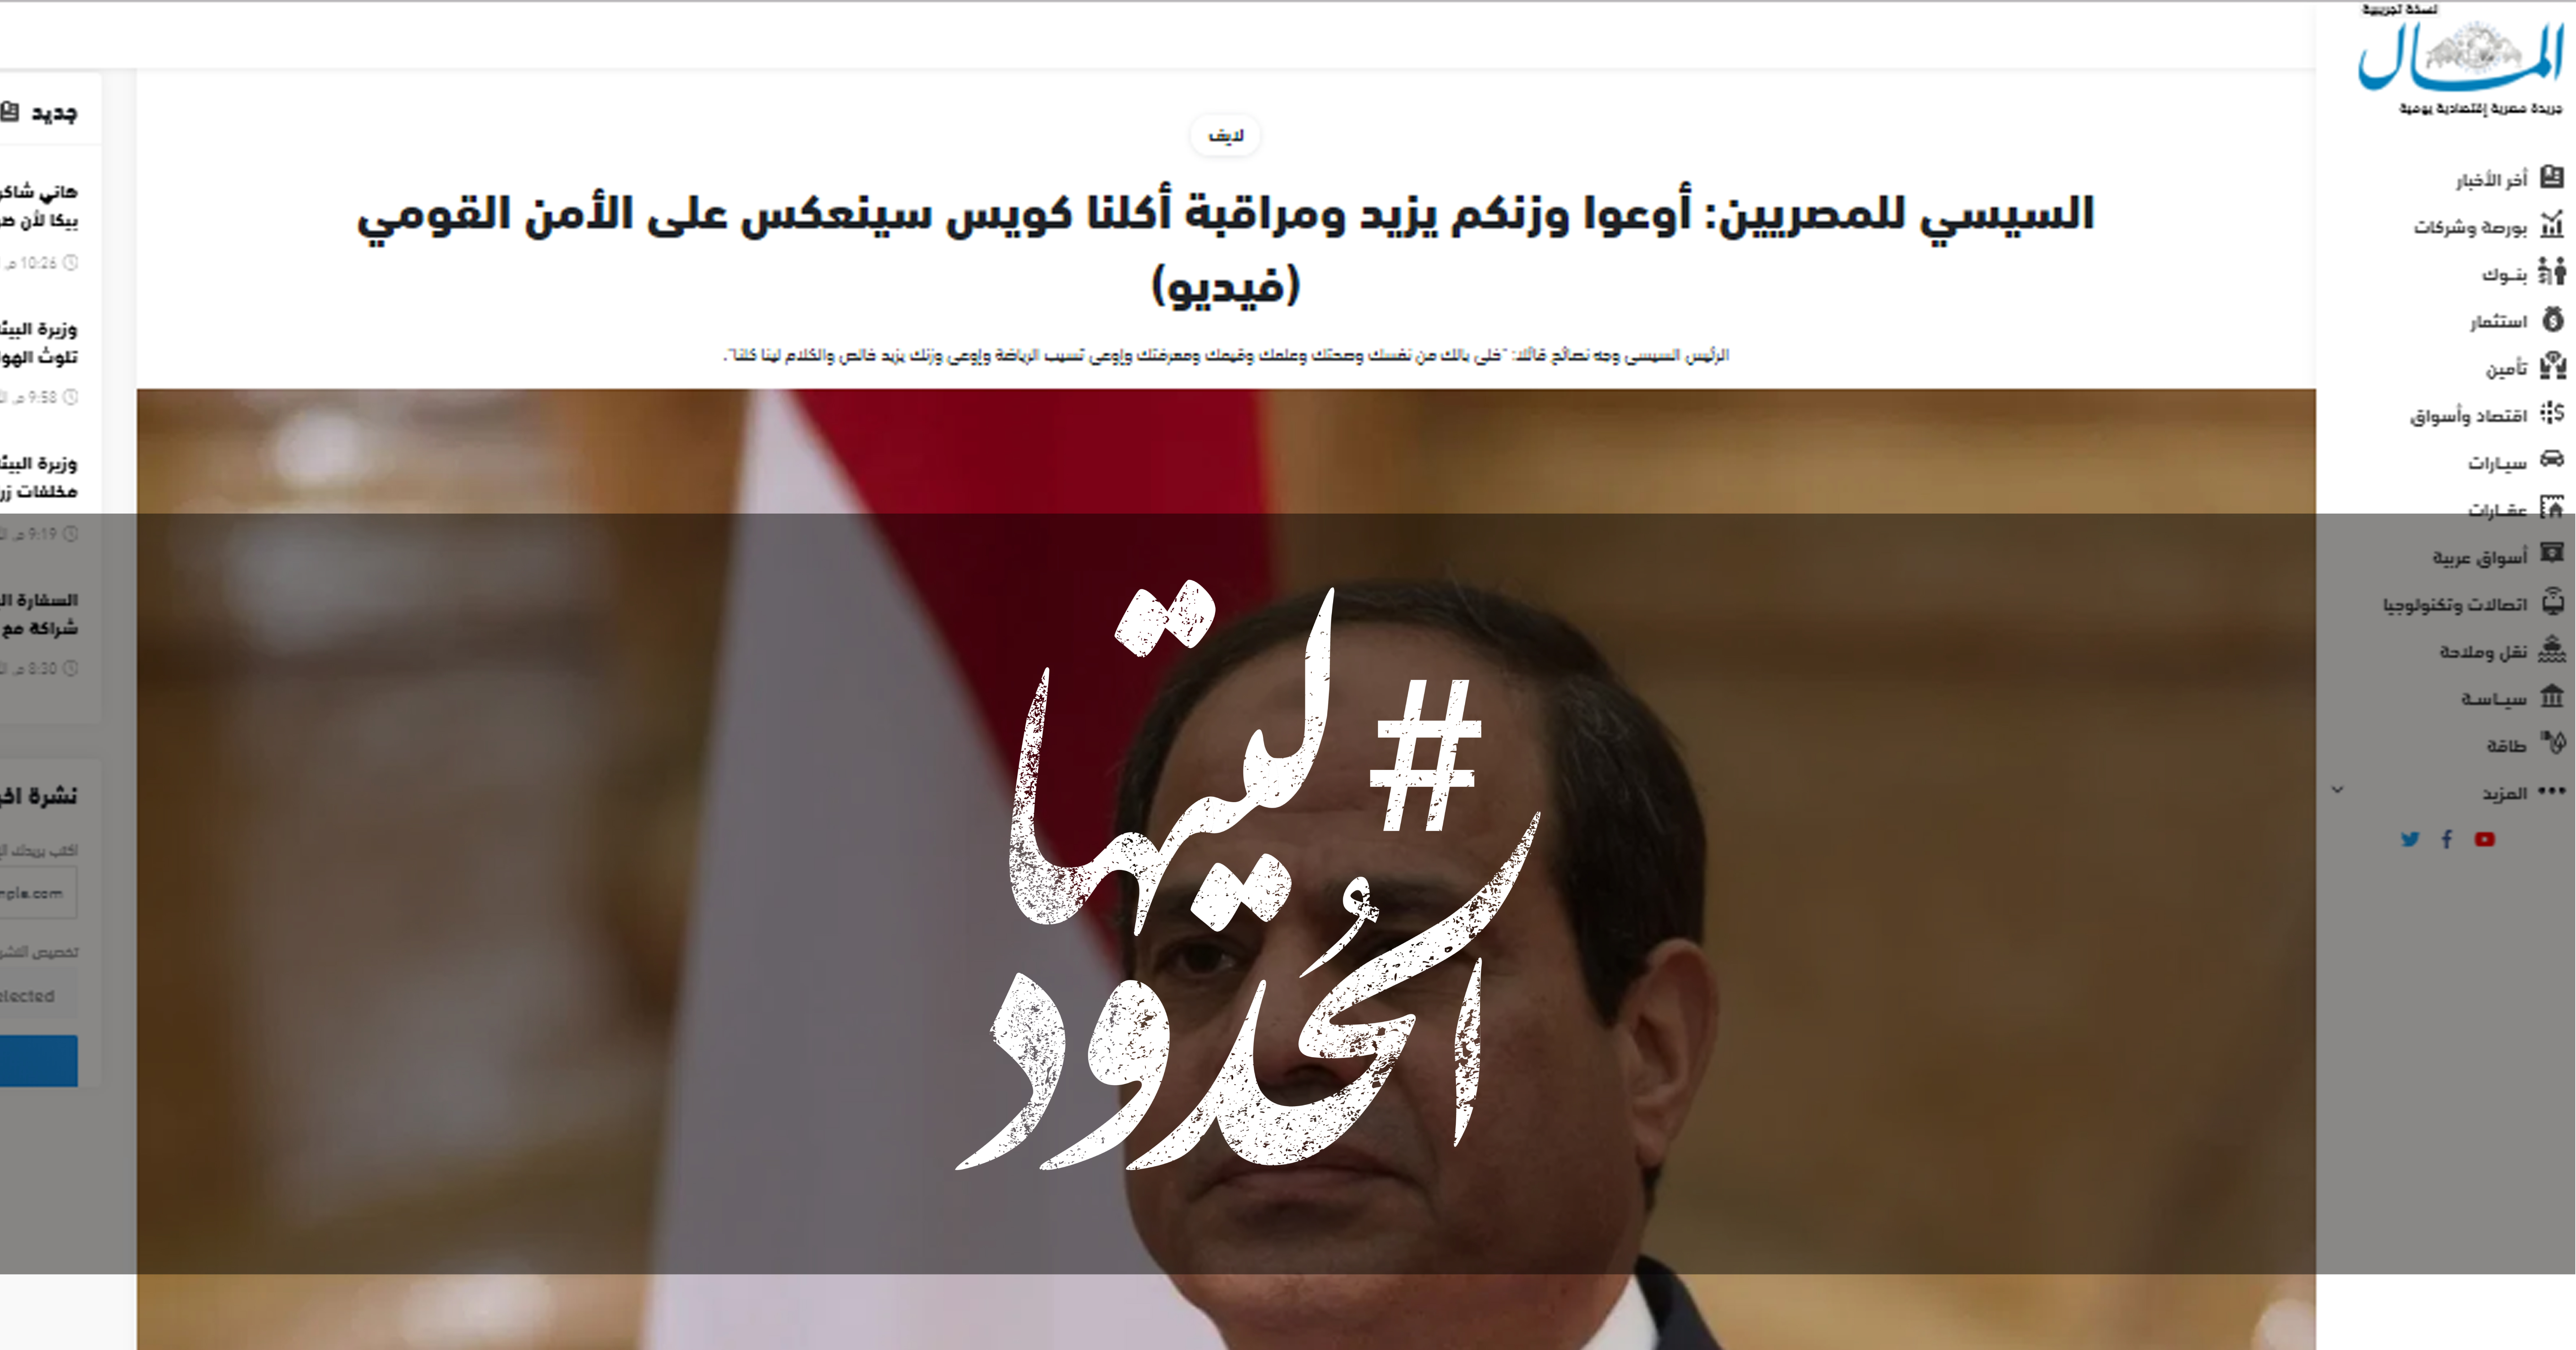 صورة السيسي للمصريين: أوعوا وزنكم يزيد ومراقبة أكلنا كويس سينعكس على الأمن القومي